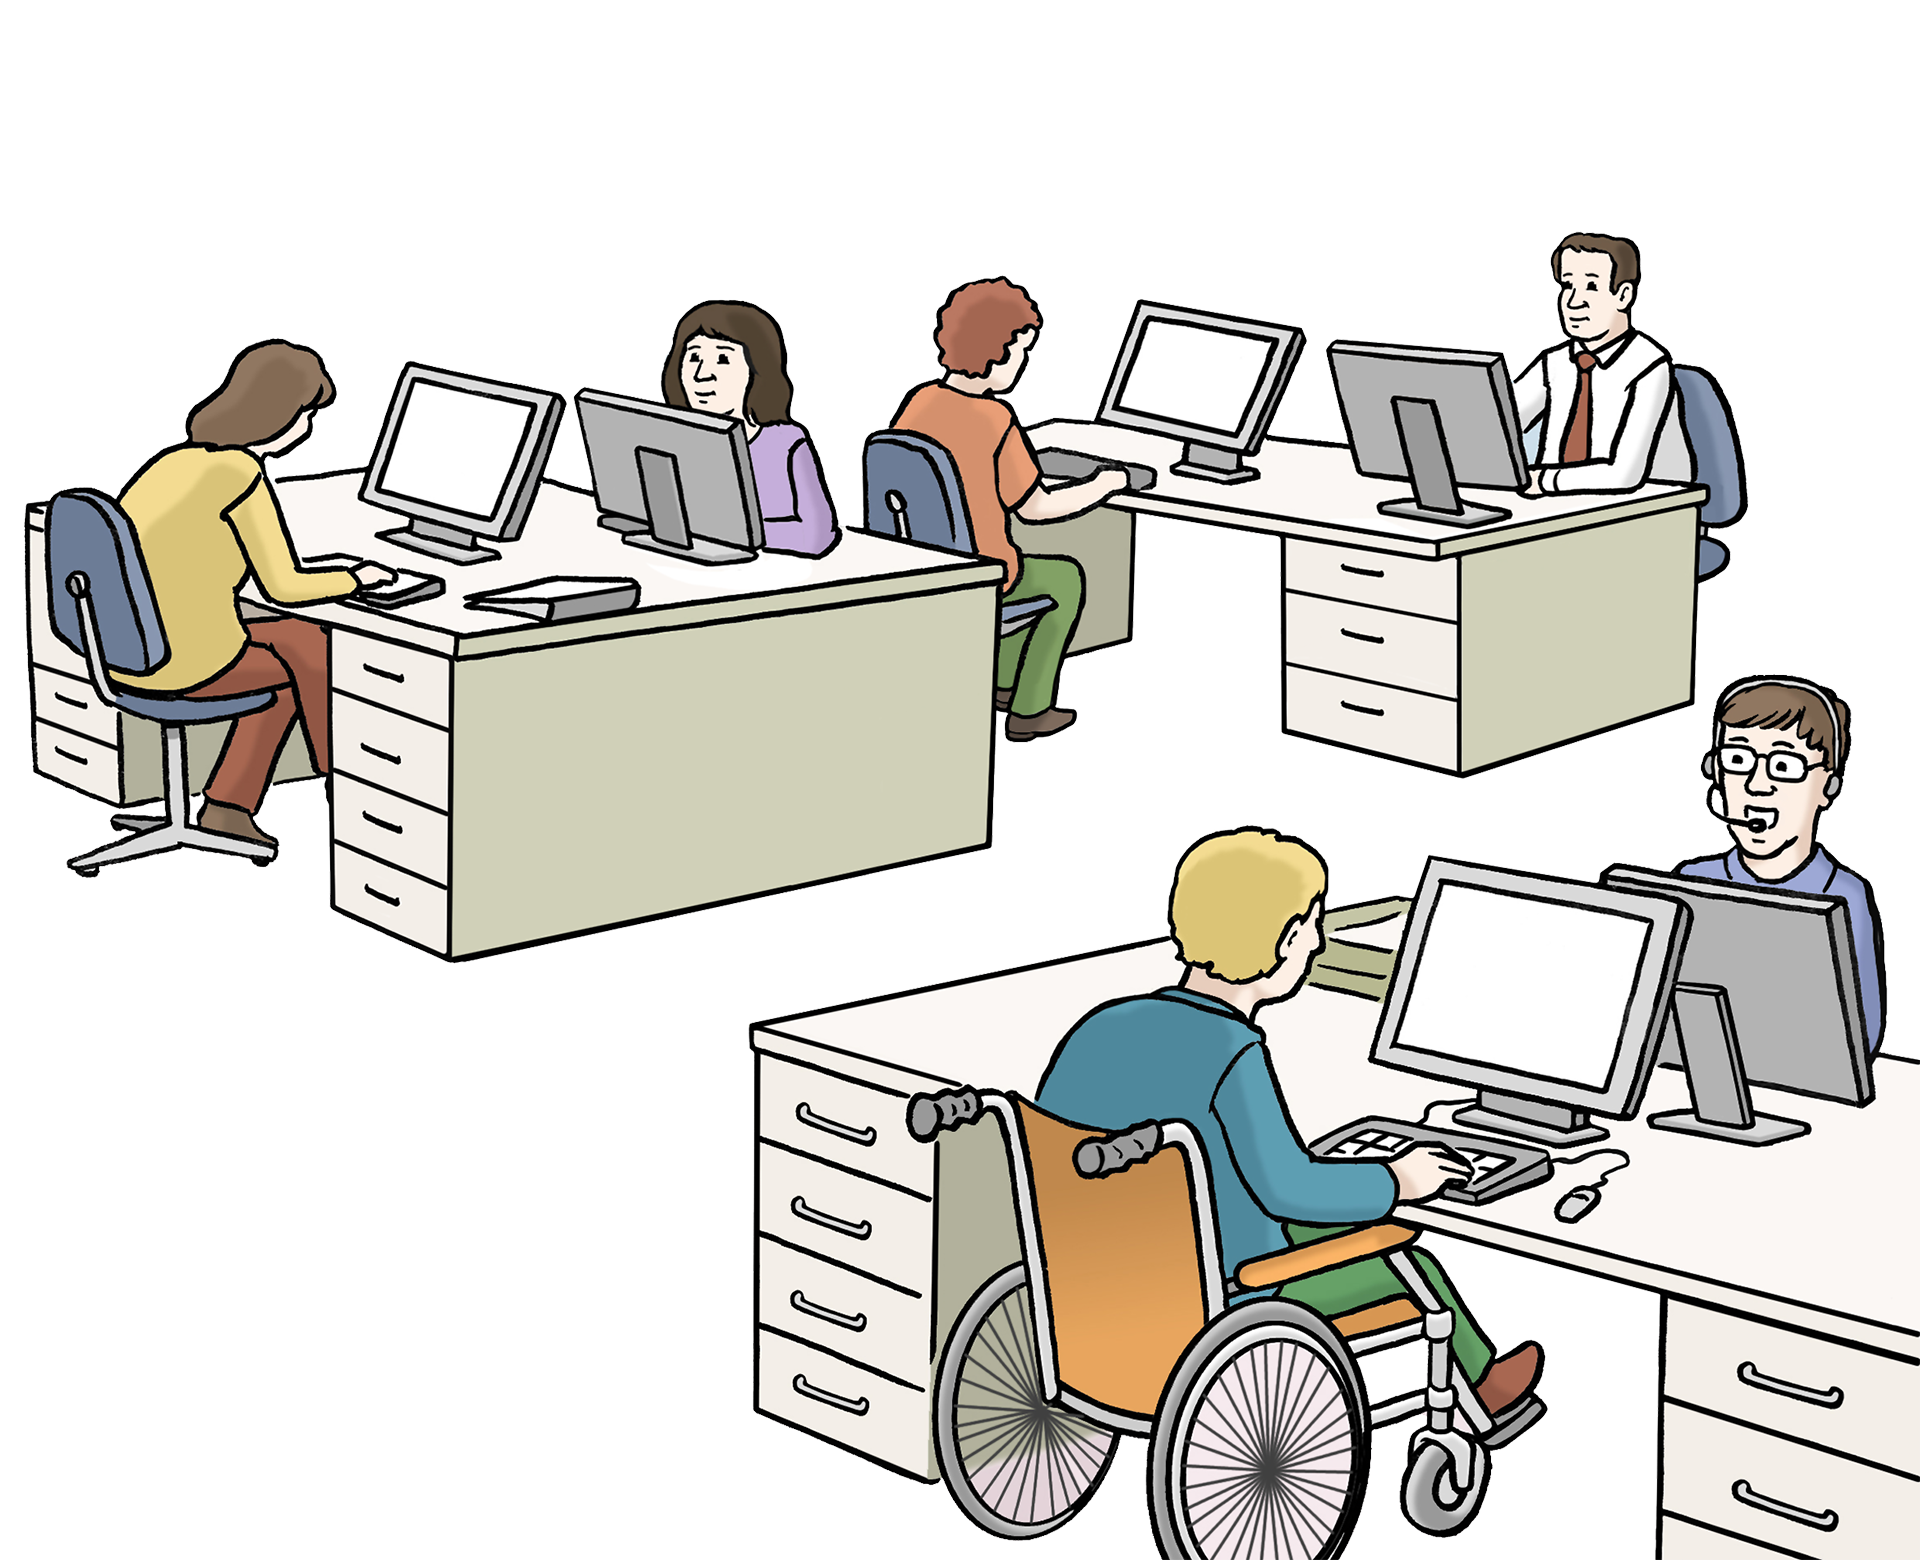 Bild zeigt ein Büro mit mehreren Schreibtischen und Menschen mit und ohne Behinderung